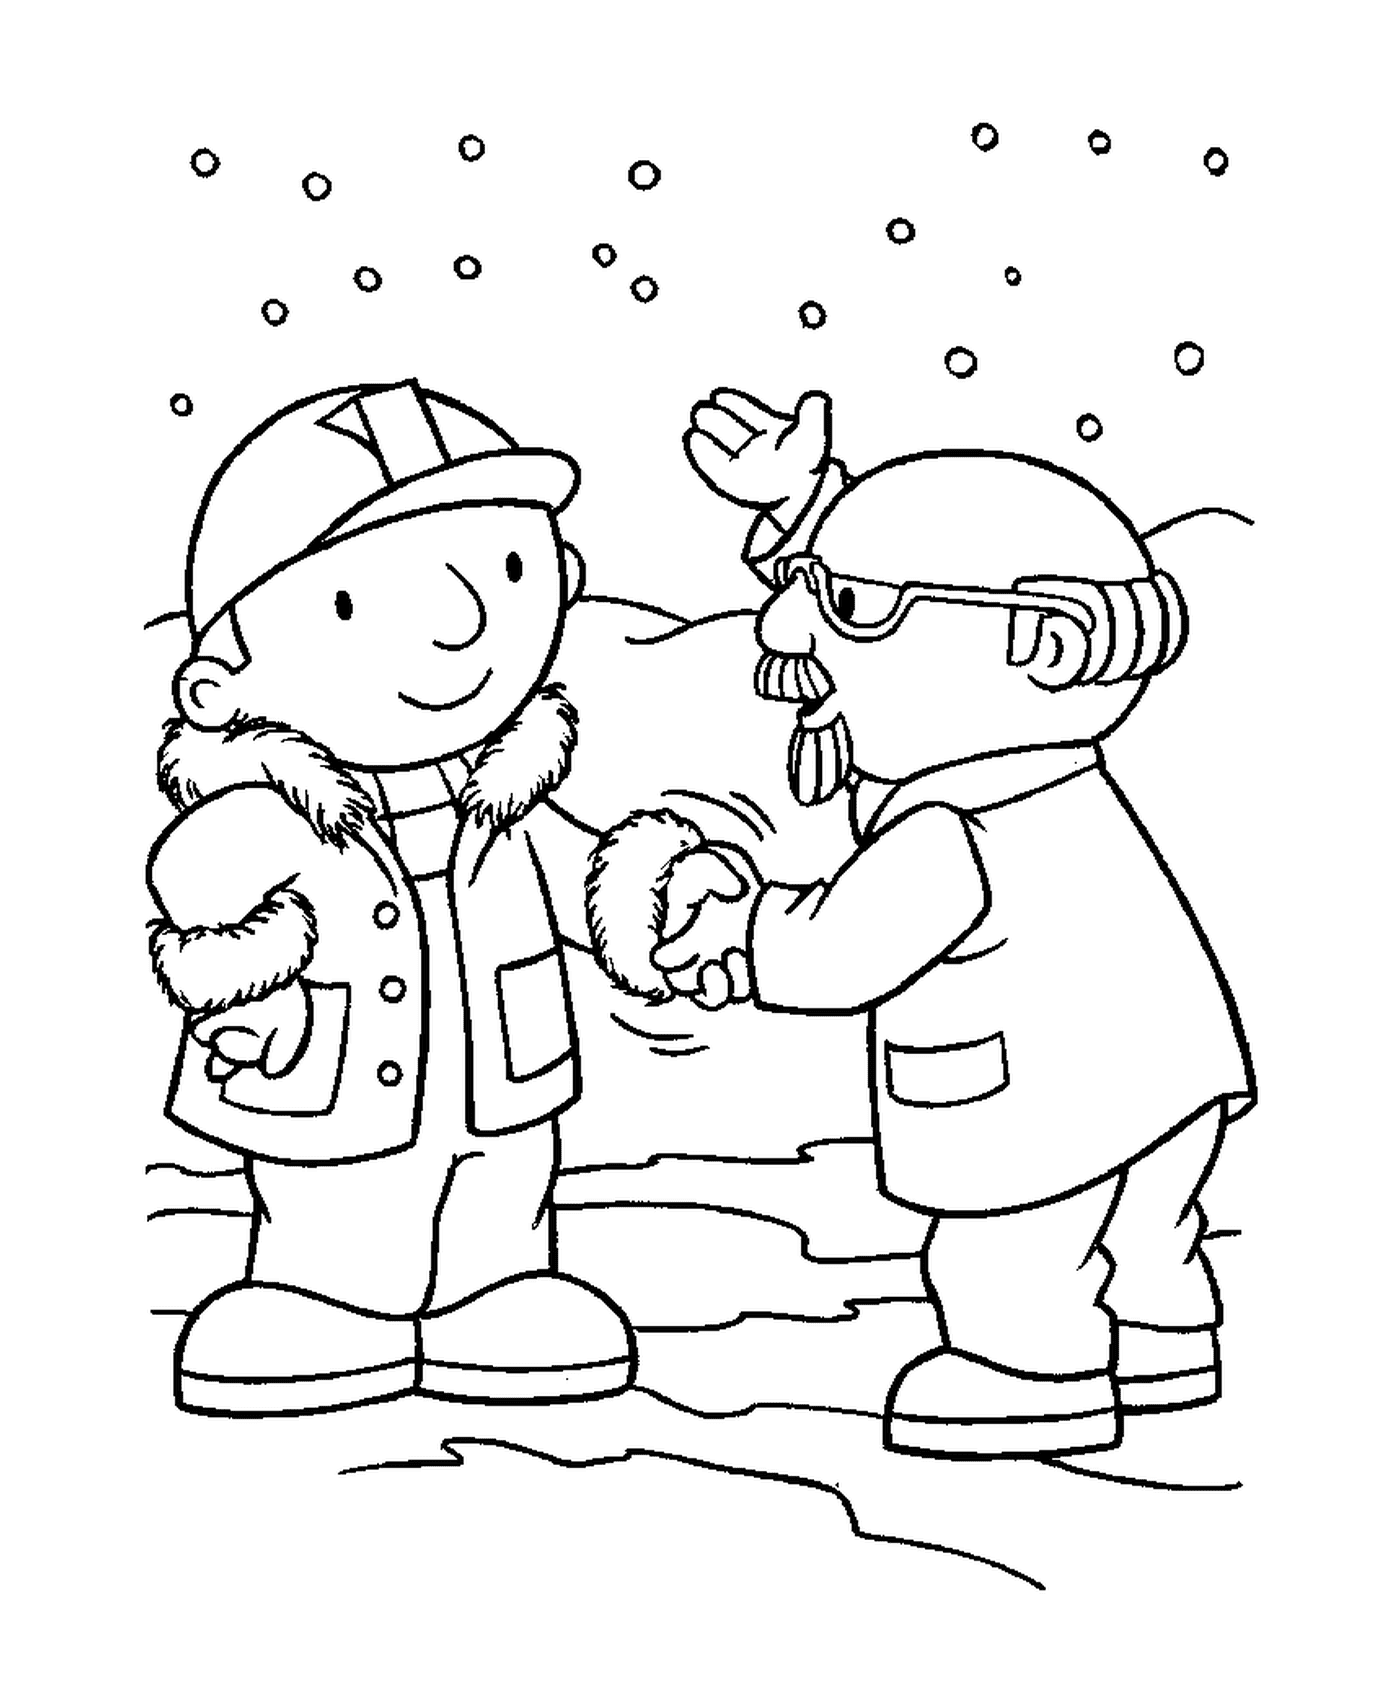  两个人在雪中握手 